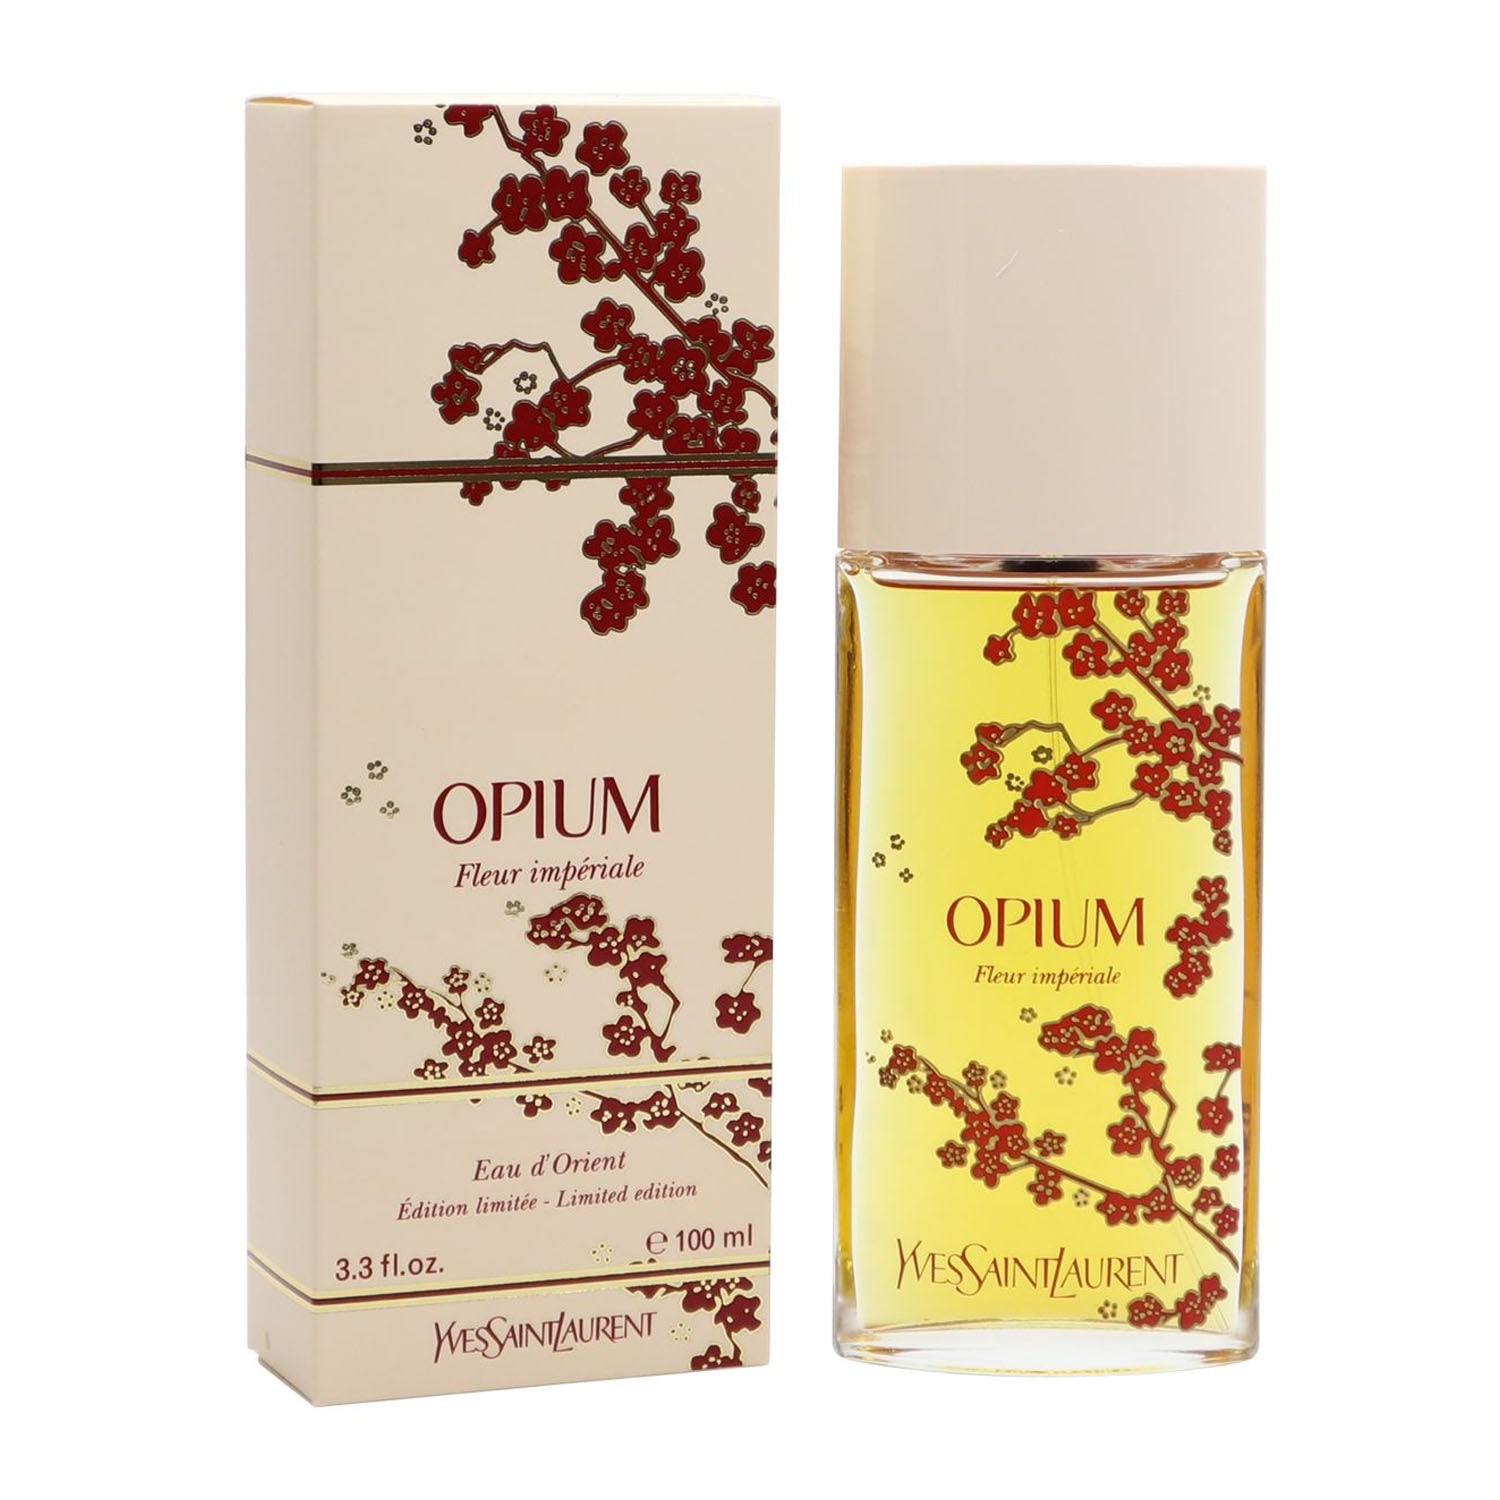 Yves Saint Laurent Opium Fleur Imperiale 100 ml Eau De Toilette Spray for Women